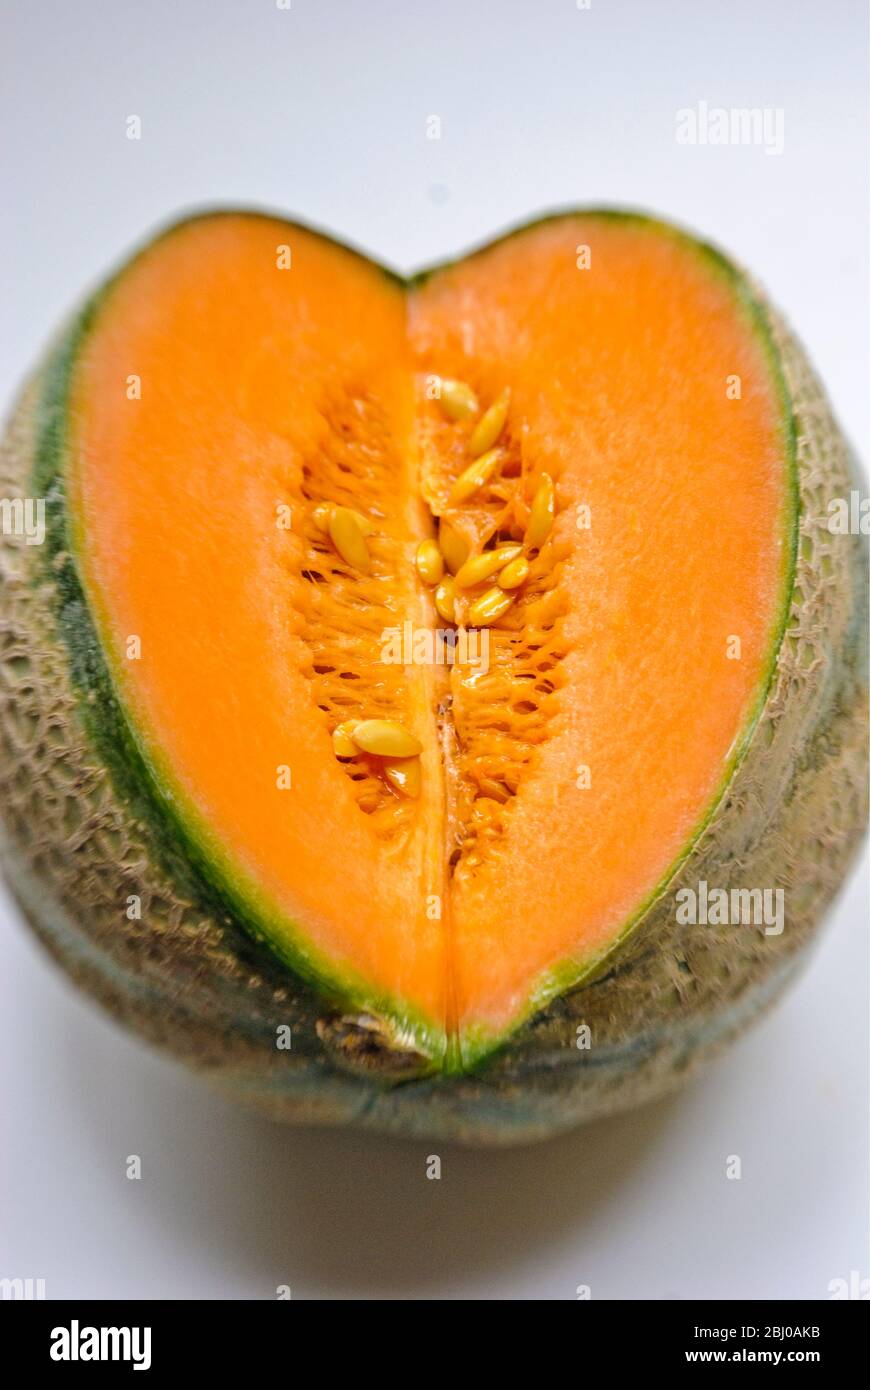 Schnitt Gesicht der Melone Cantaloupe zeigt Fleisch und Samen im Inneren - Stockfoto